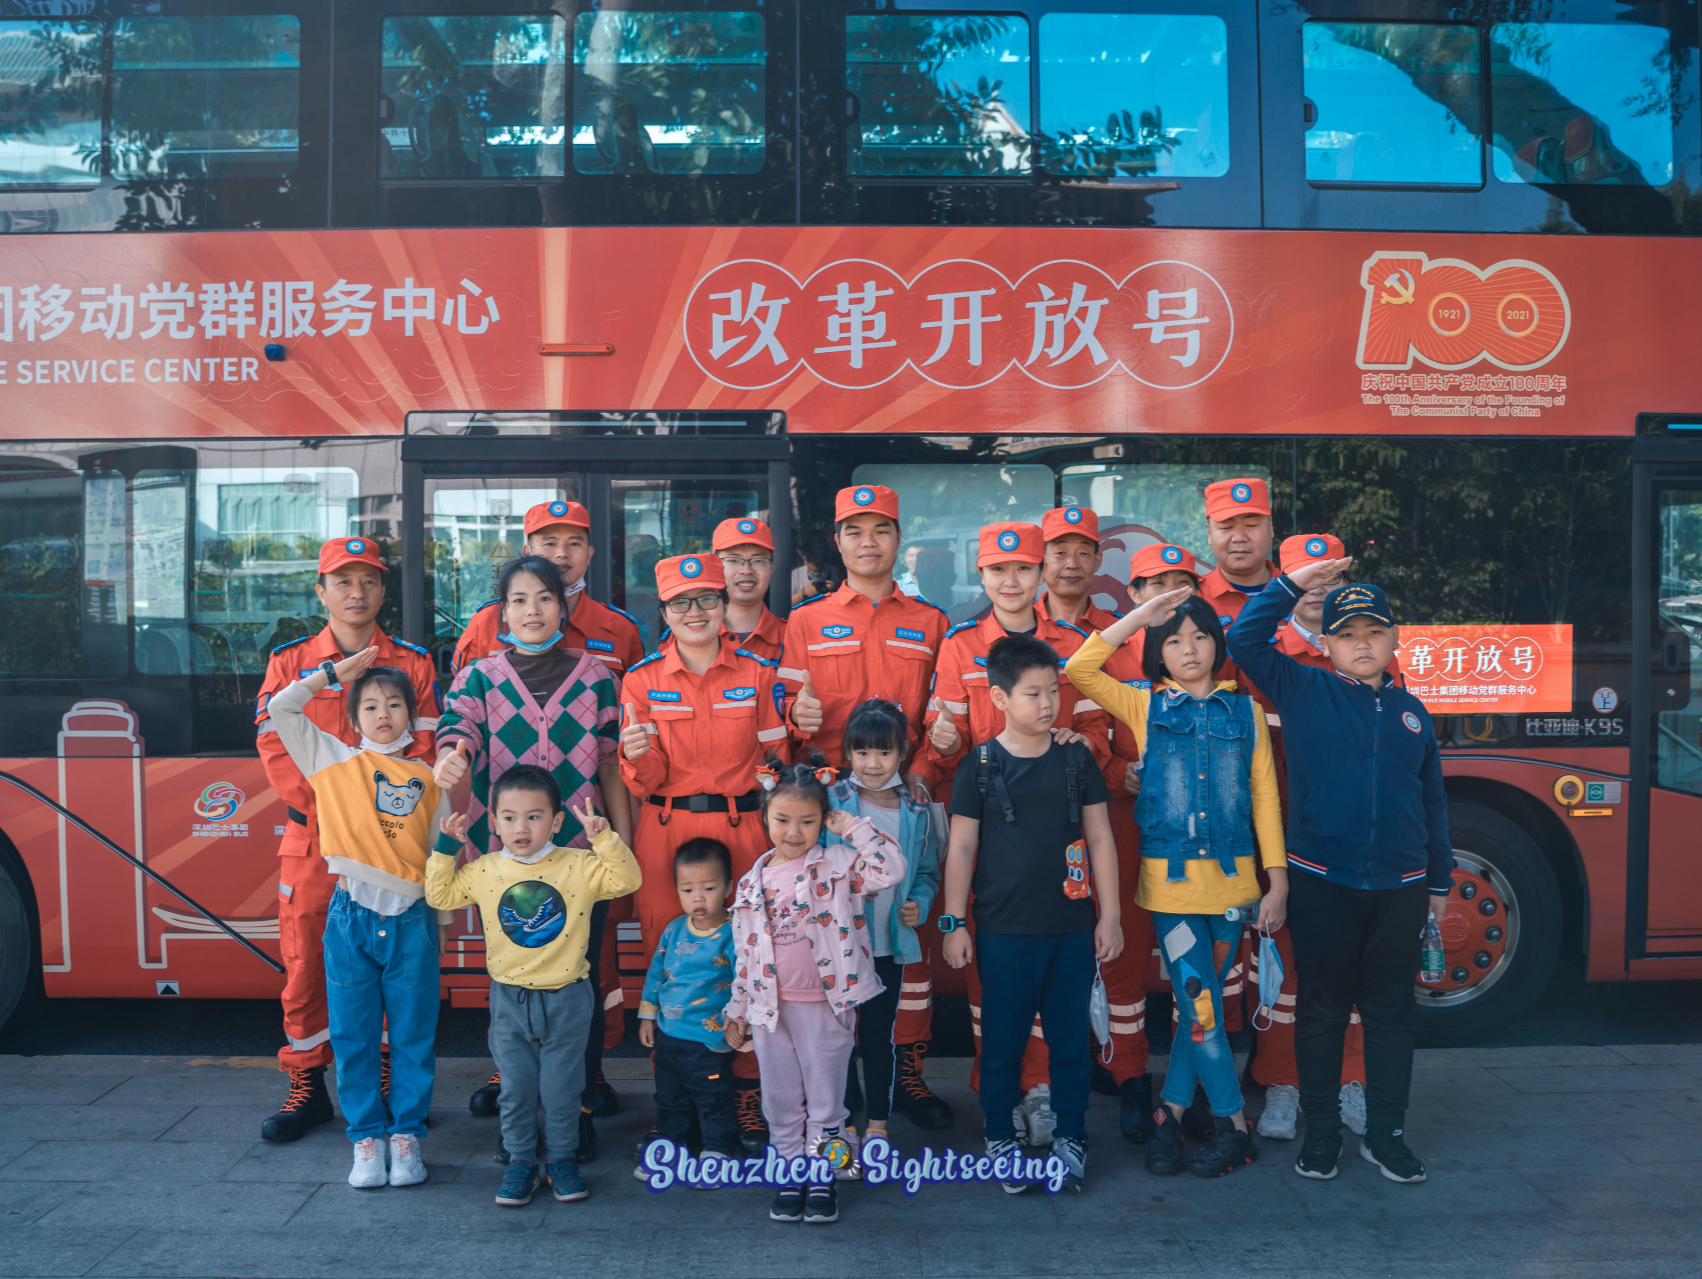 深圳巴士集团“红胖子”开展 “应急救援先锋先行”专场活动